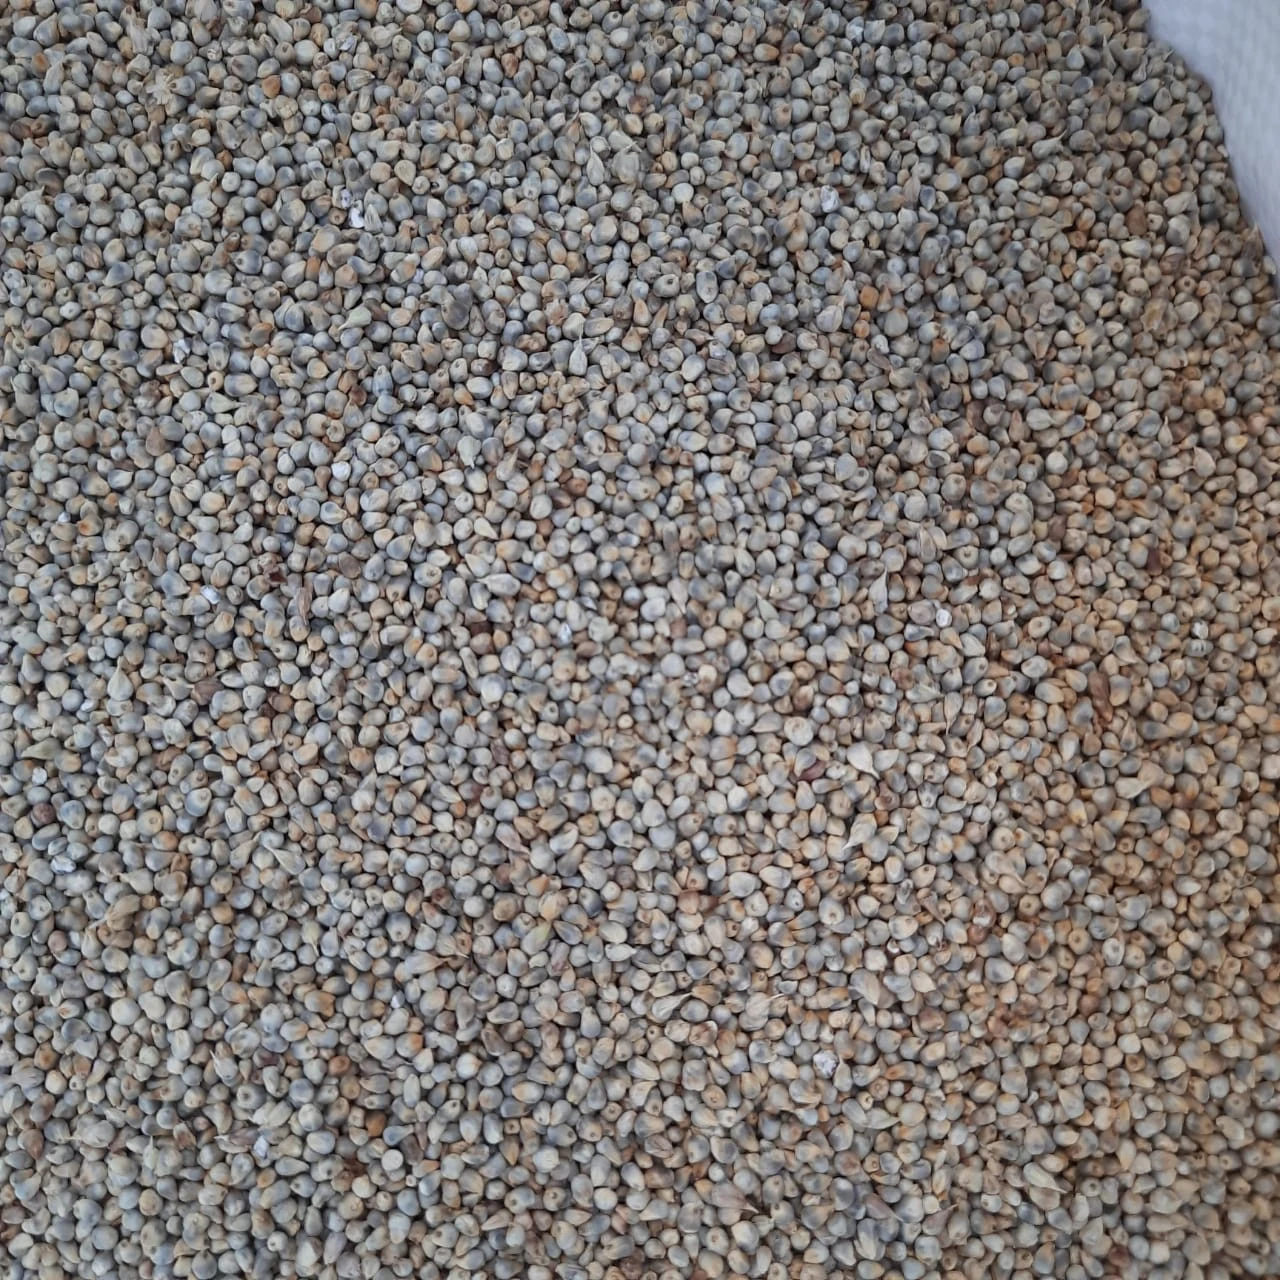 Machine Cleaned Green Millet/ Bajra Millet Bajra Seeds for Export